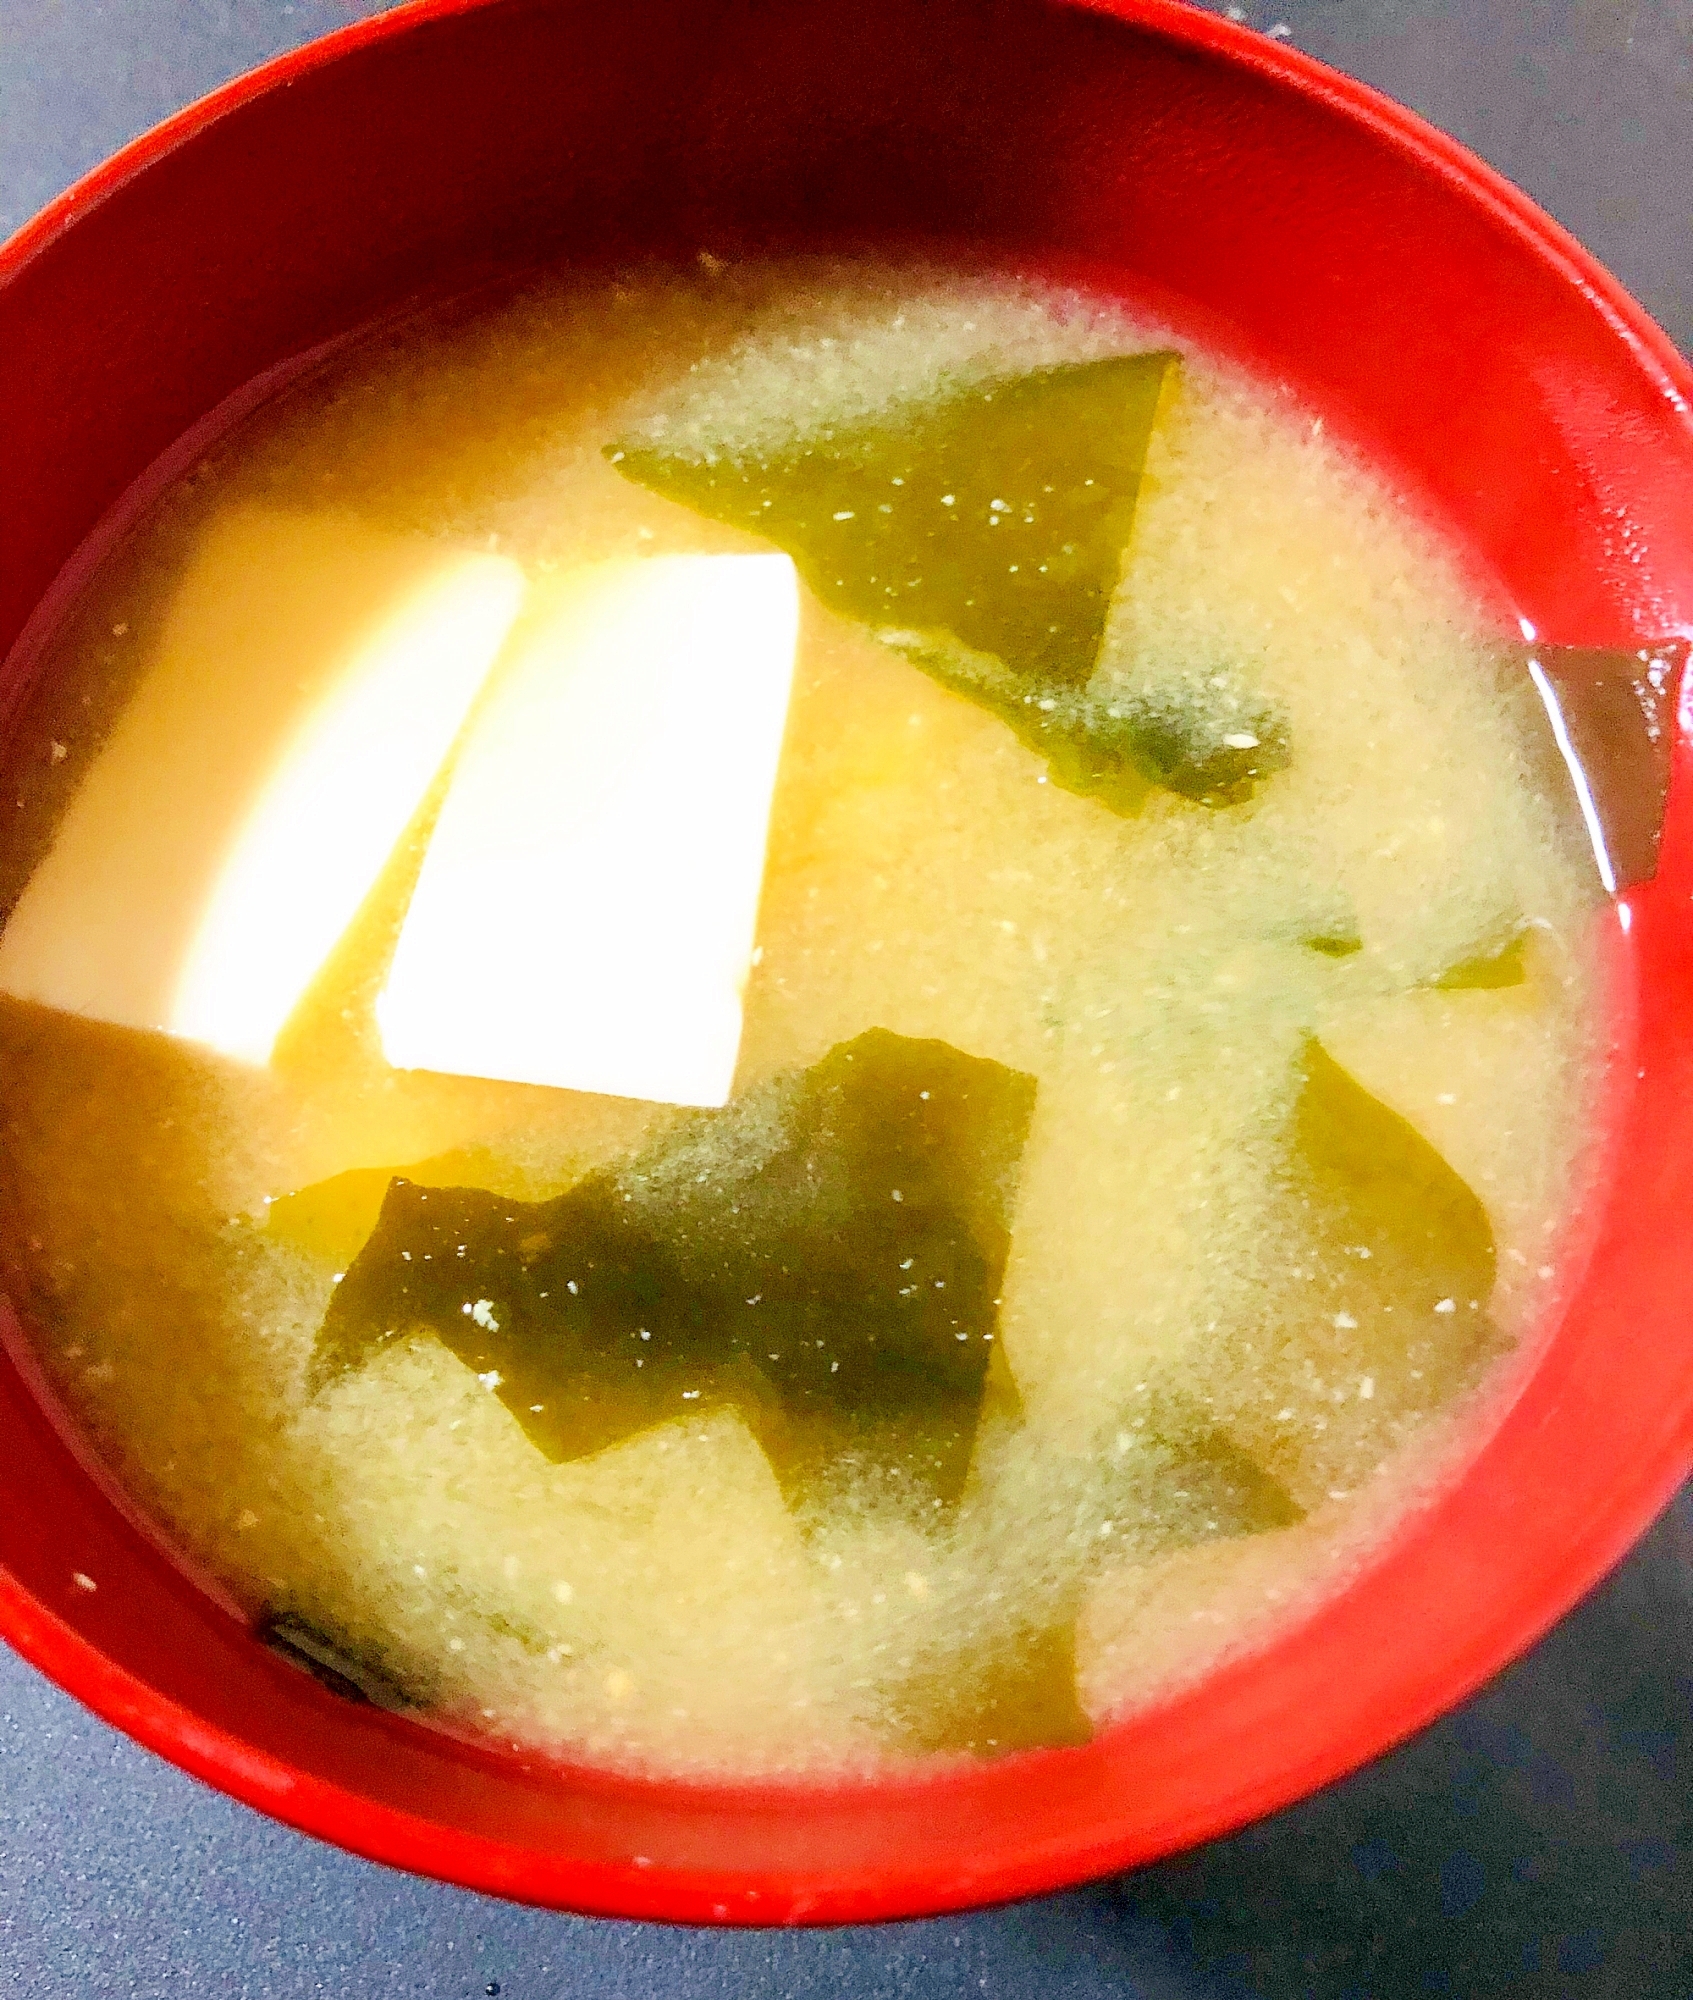 絹ごし豆腐と生わかめの味噌汁